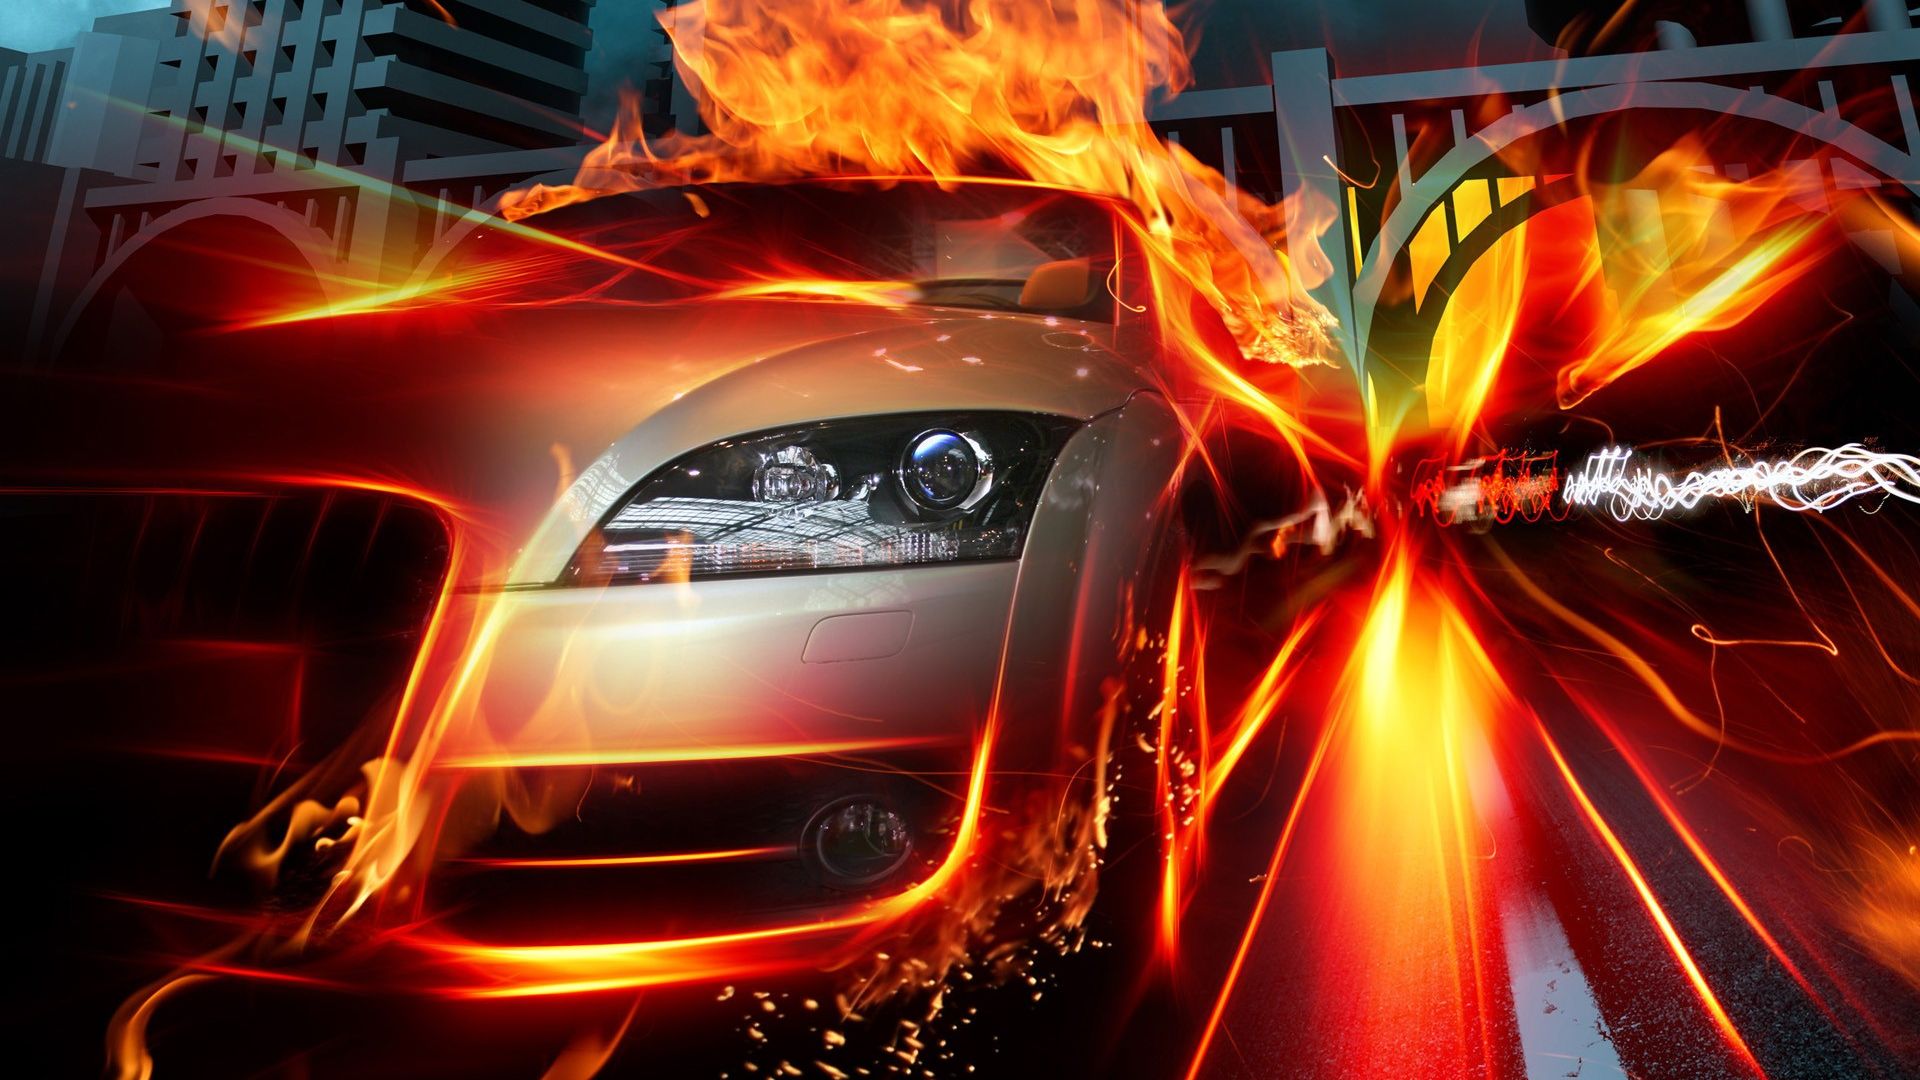 Wallpaper Race car on fire